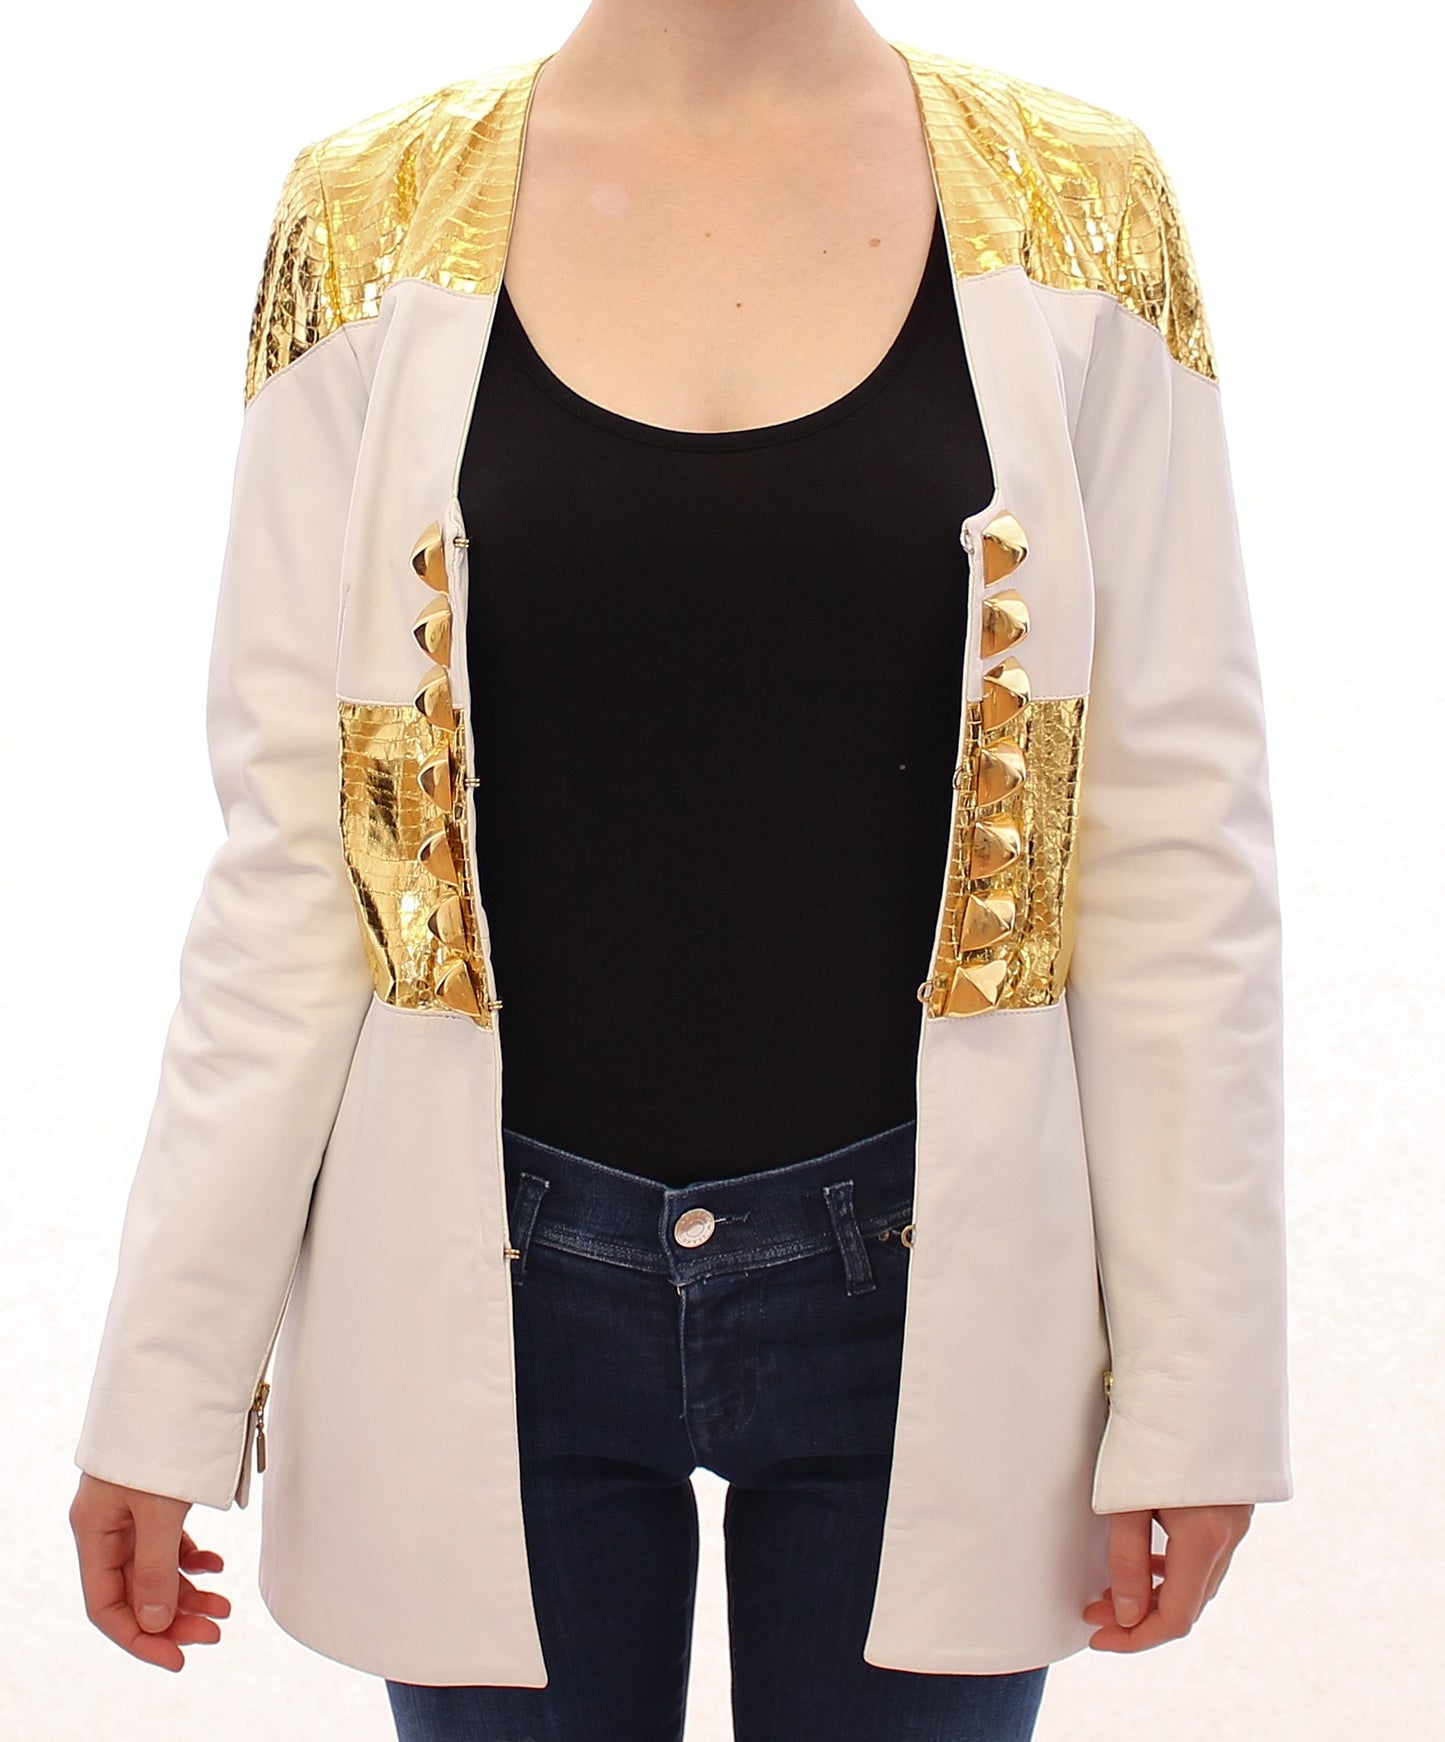 Elegant White & Gold Leather Jacket